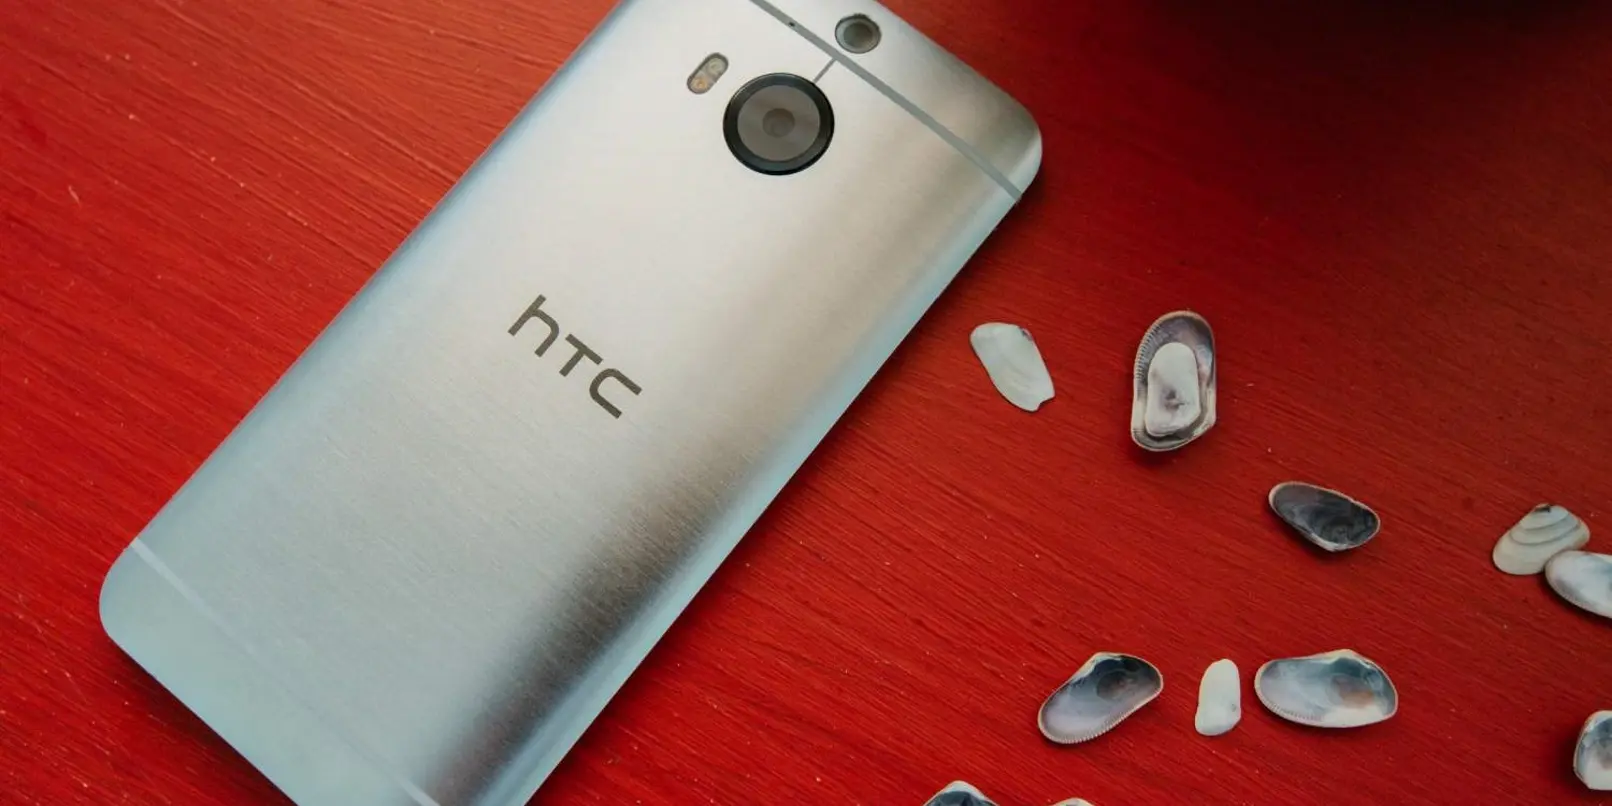 HTC reporta perdidas por 9 mdd en el Q3 2015